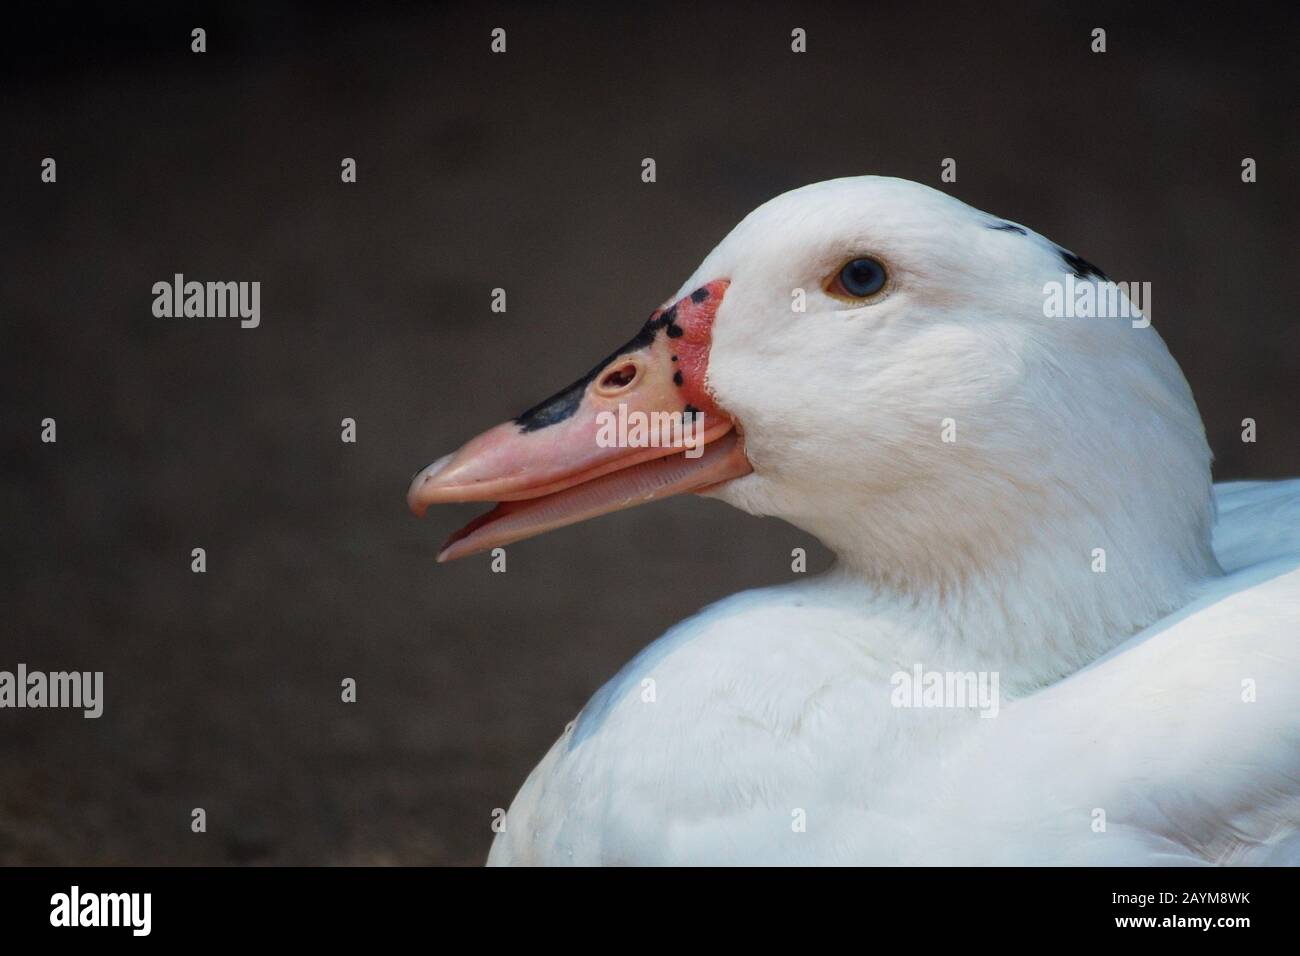 Closeup of a white duck on blurry background. Ave de corral con bonito plumaje blanco Stock Photo